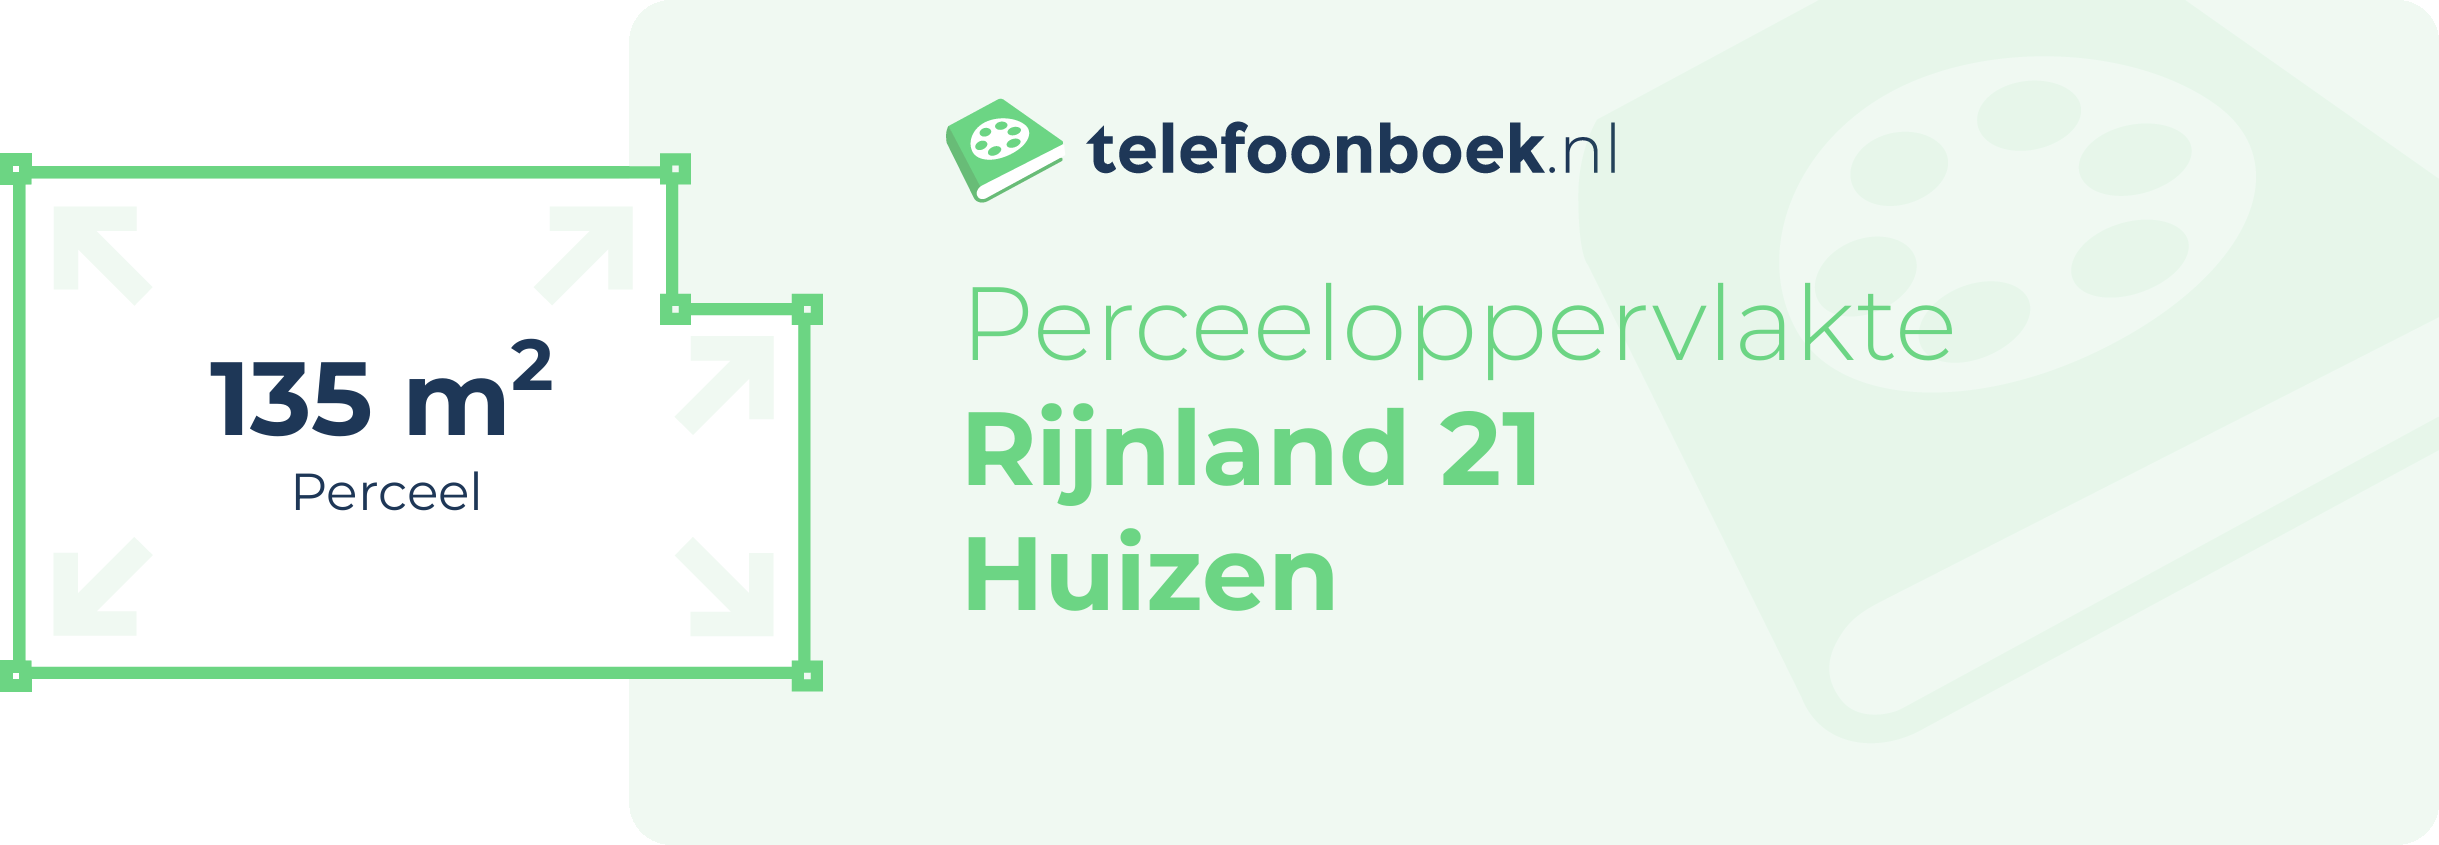 Perceeloppervlakte Rijnland 21 Huizen